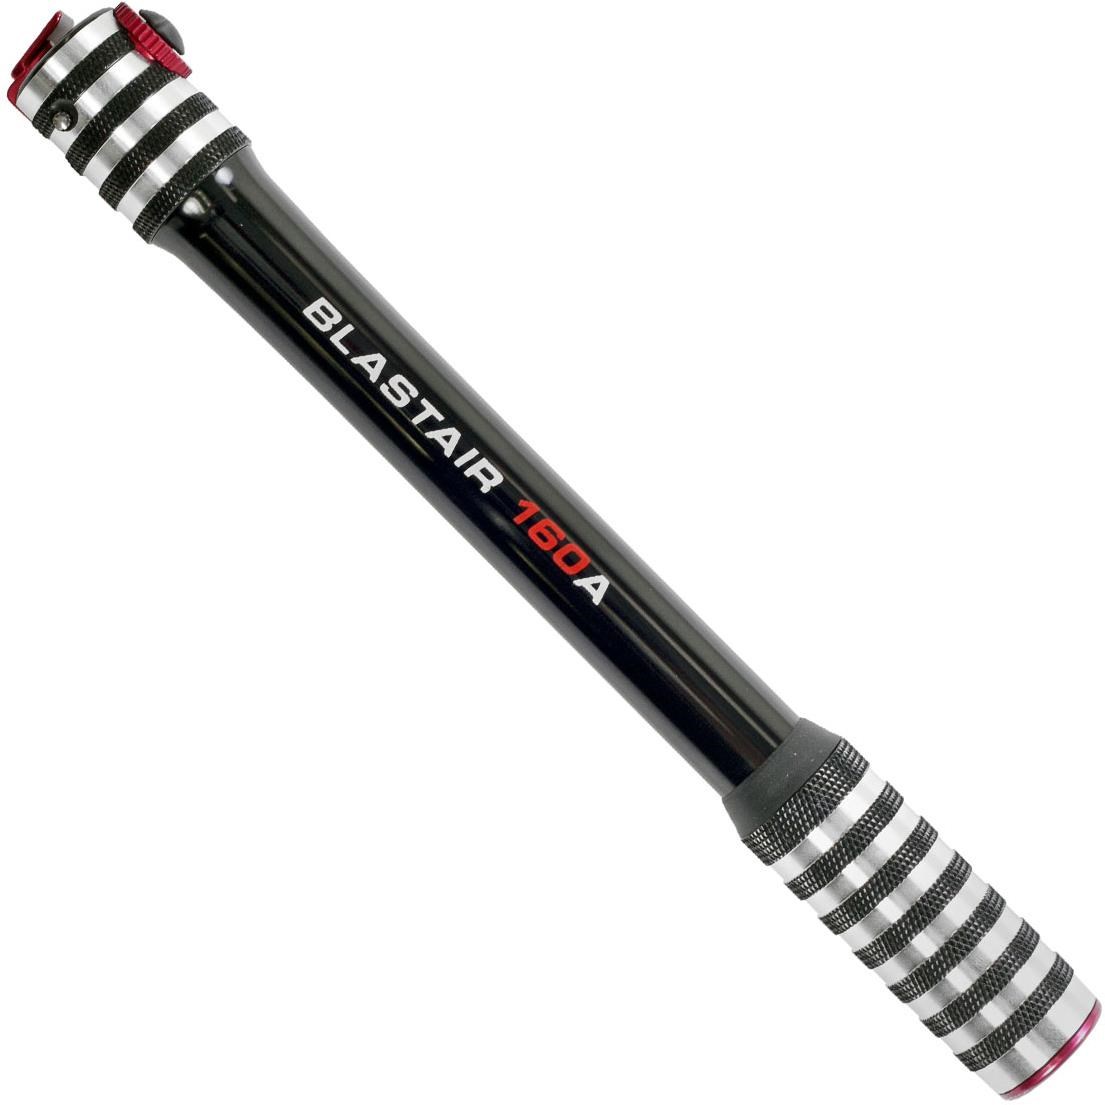 Axiom Blastair 160A Mini Road Pump product image